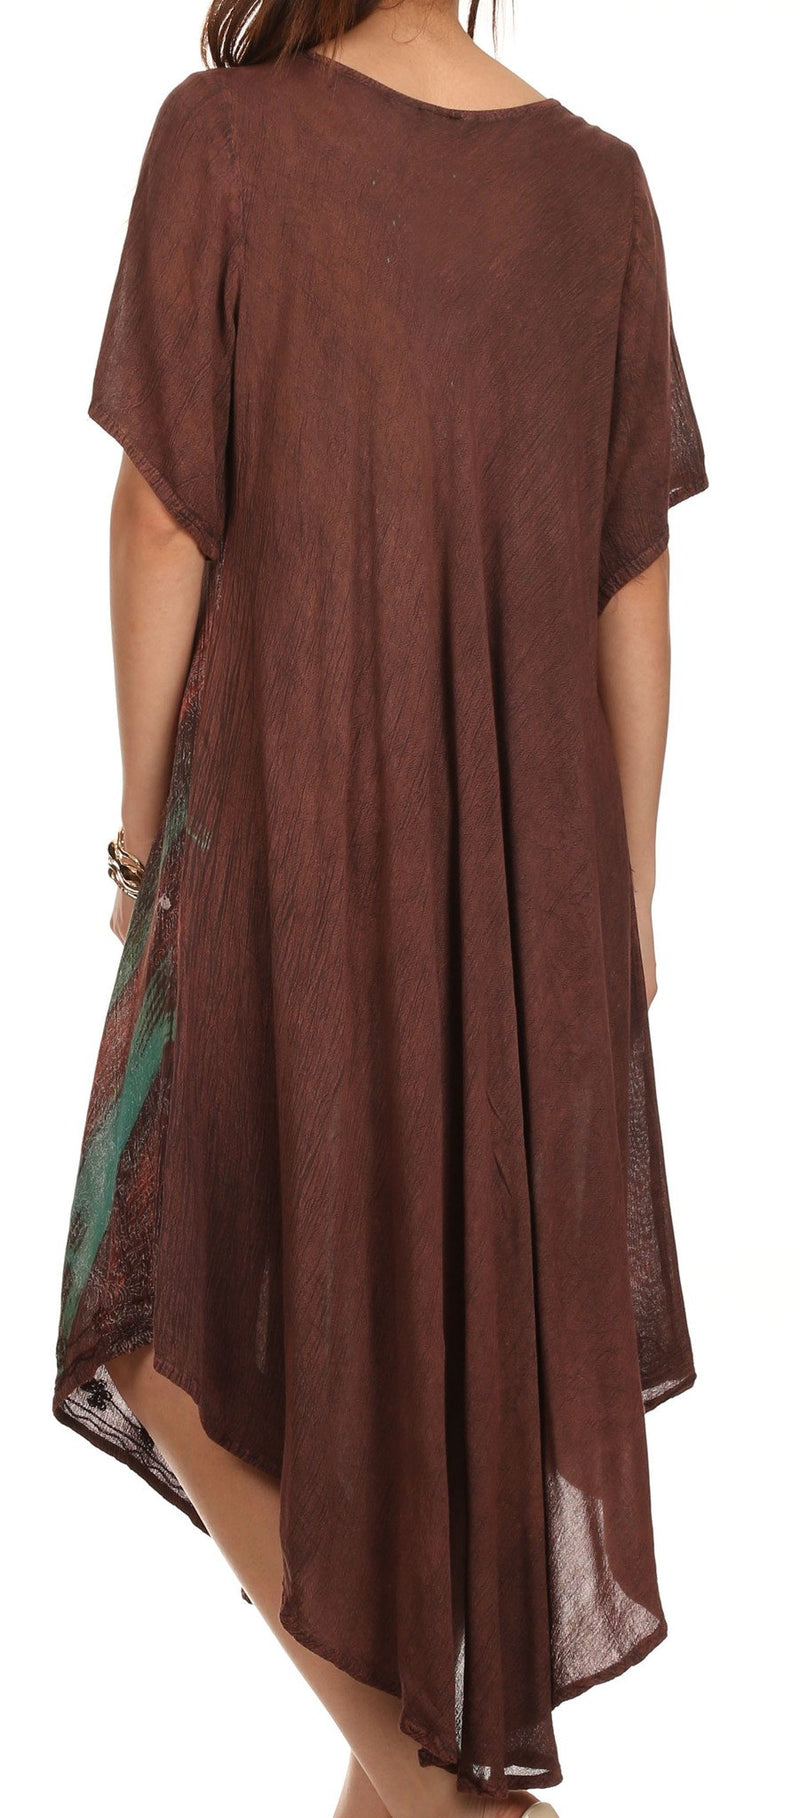 Sakkas Lela Batik Sequin Embroidered Scoop Neck Cap Sleeves Cover Up / Dress